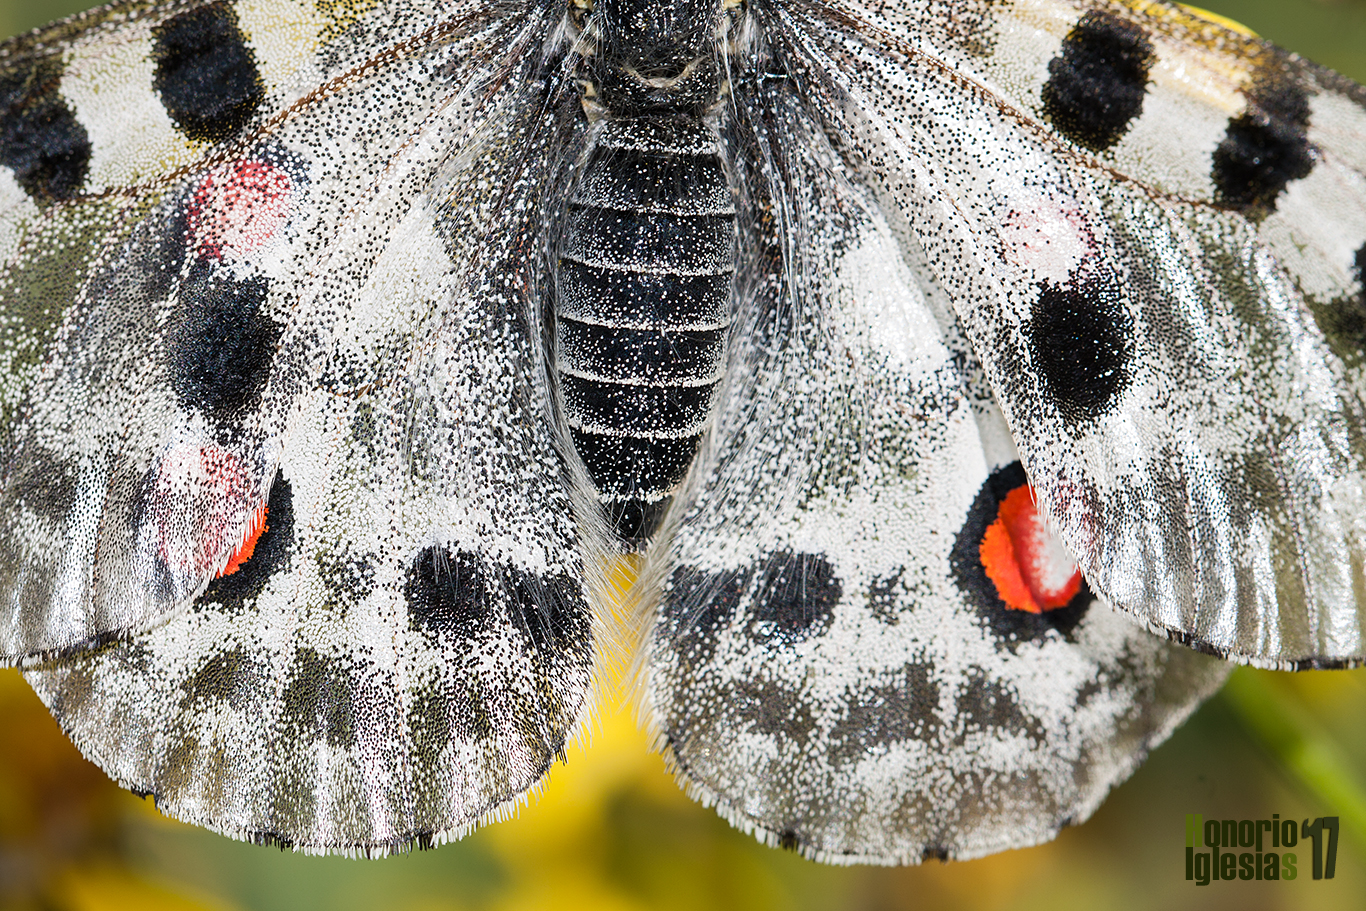 Detalle del abdomen de una hembra de mariposa apolo (Parnassius apollo), probablemente uno de los abdomenes más gruesos de entre las mariposas diurnas de la península ibérica. Las hembras tienen un abdomen más ancho que los machos para poder albergar los huevos, y en general son más grandes que éstos.